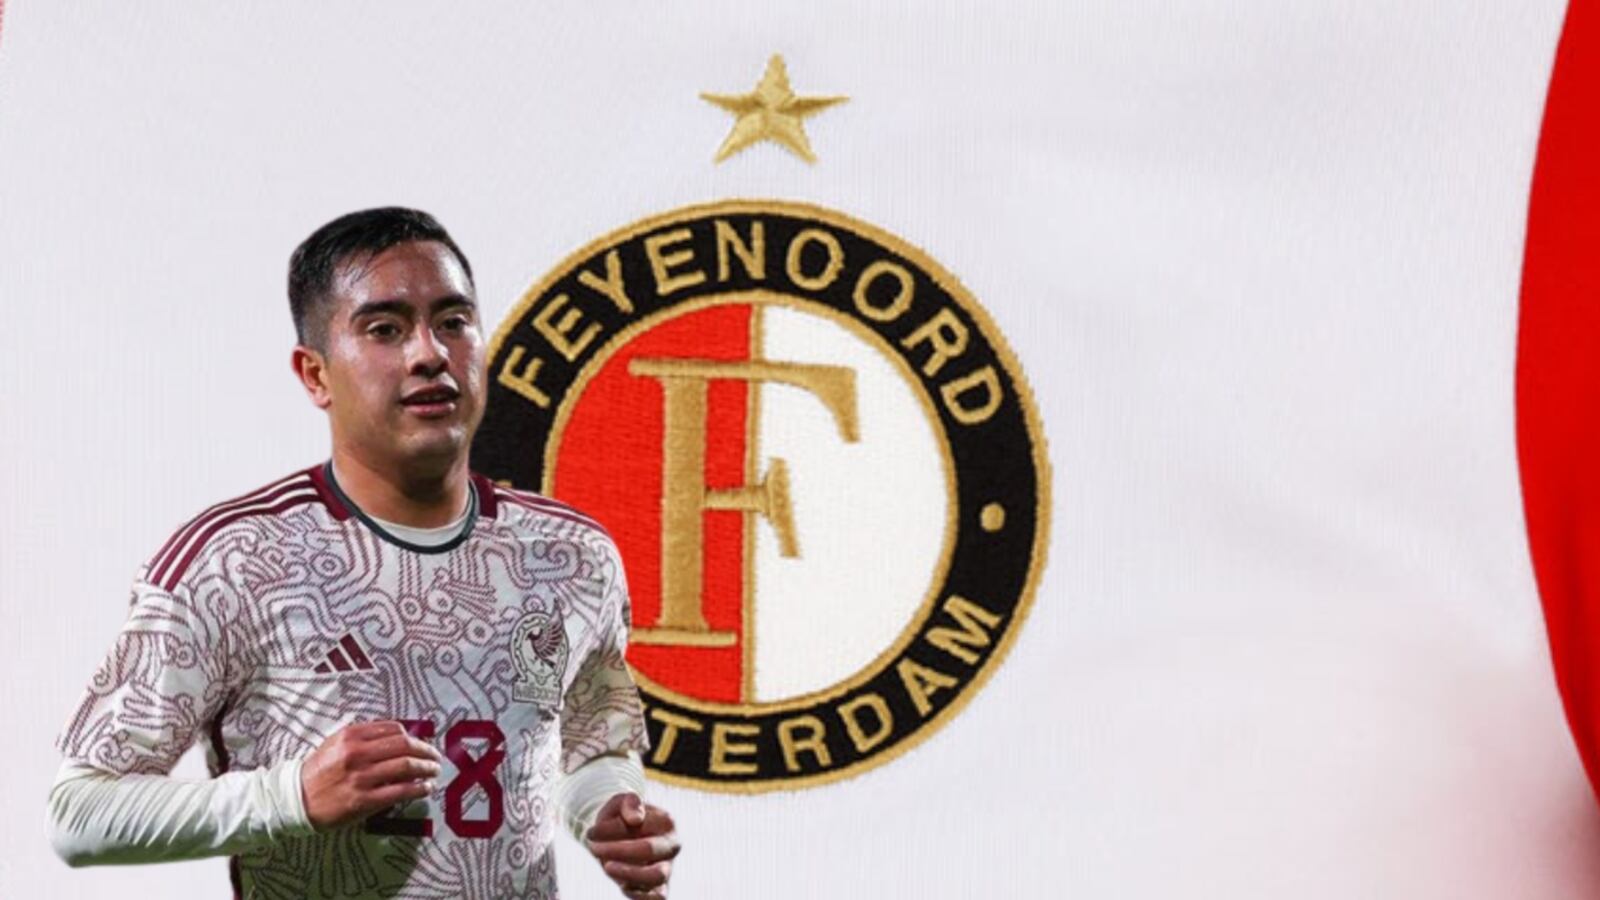 No sólo Chiquito Sánchez, Feyenoord ficharía a 2 mexicanos más para el verano